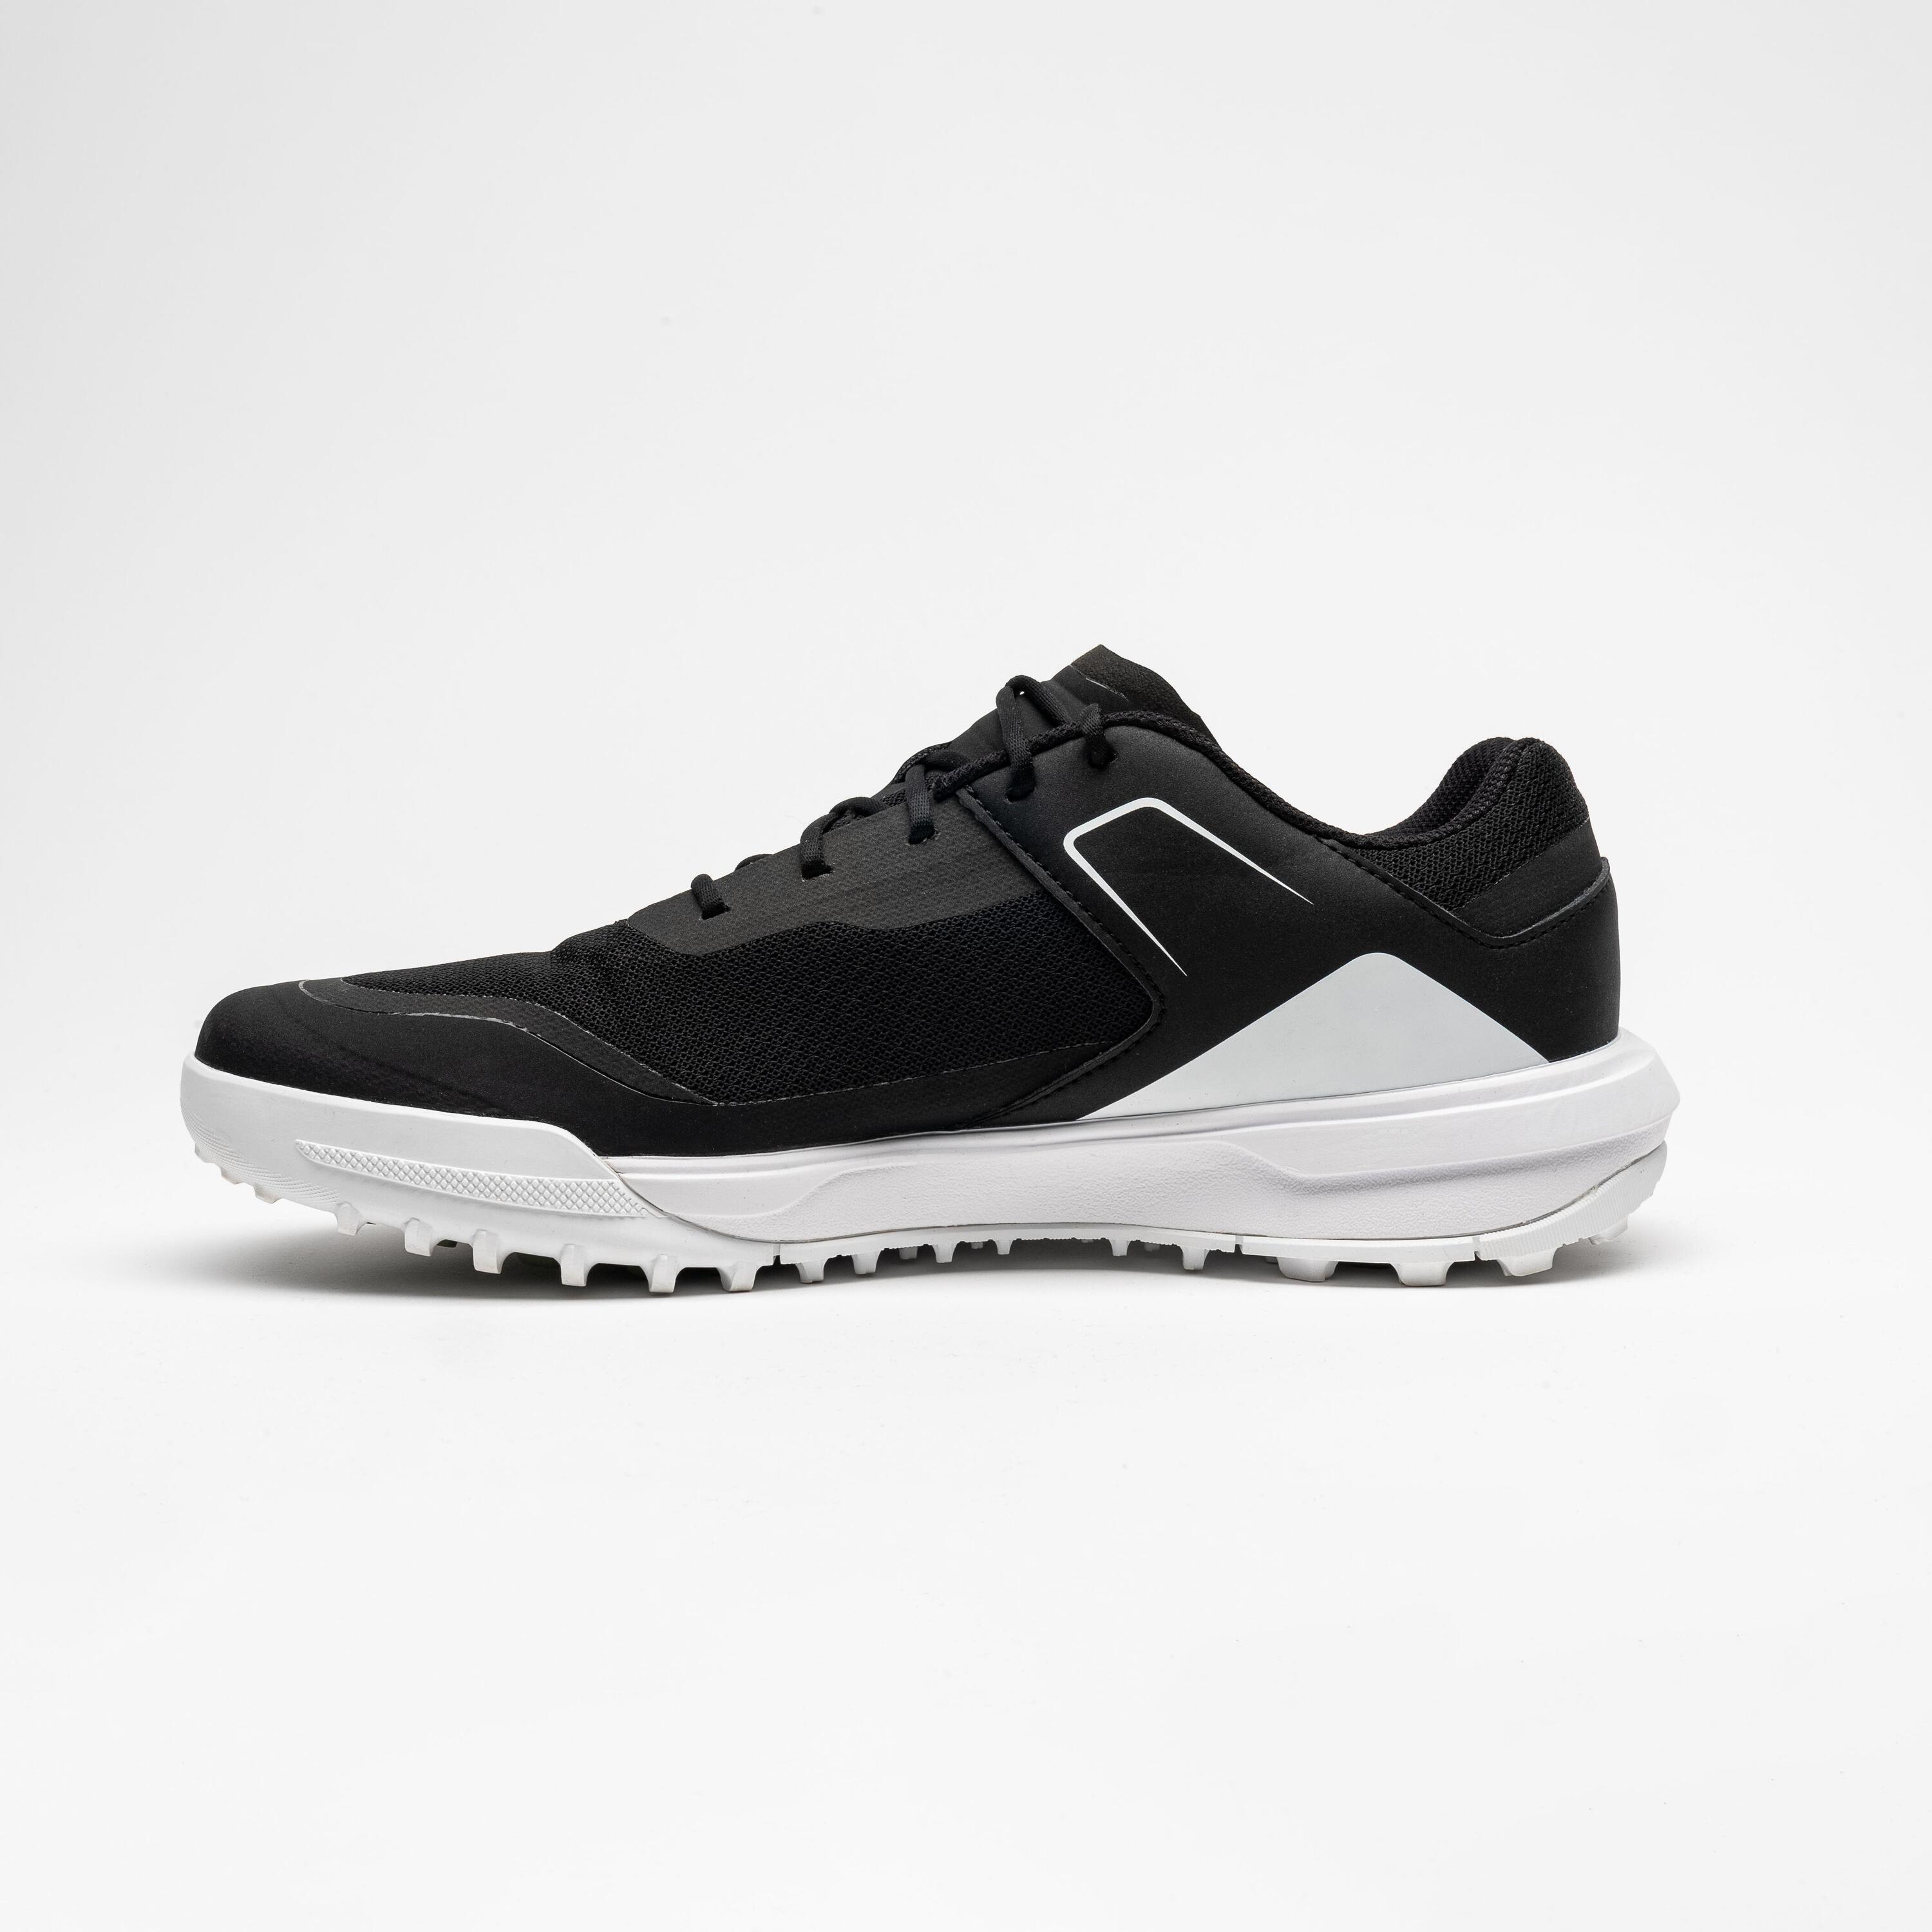 Men's Golf Breathable Shoes - WW 500 Black 2/6